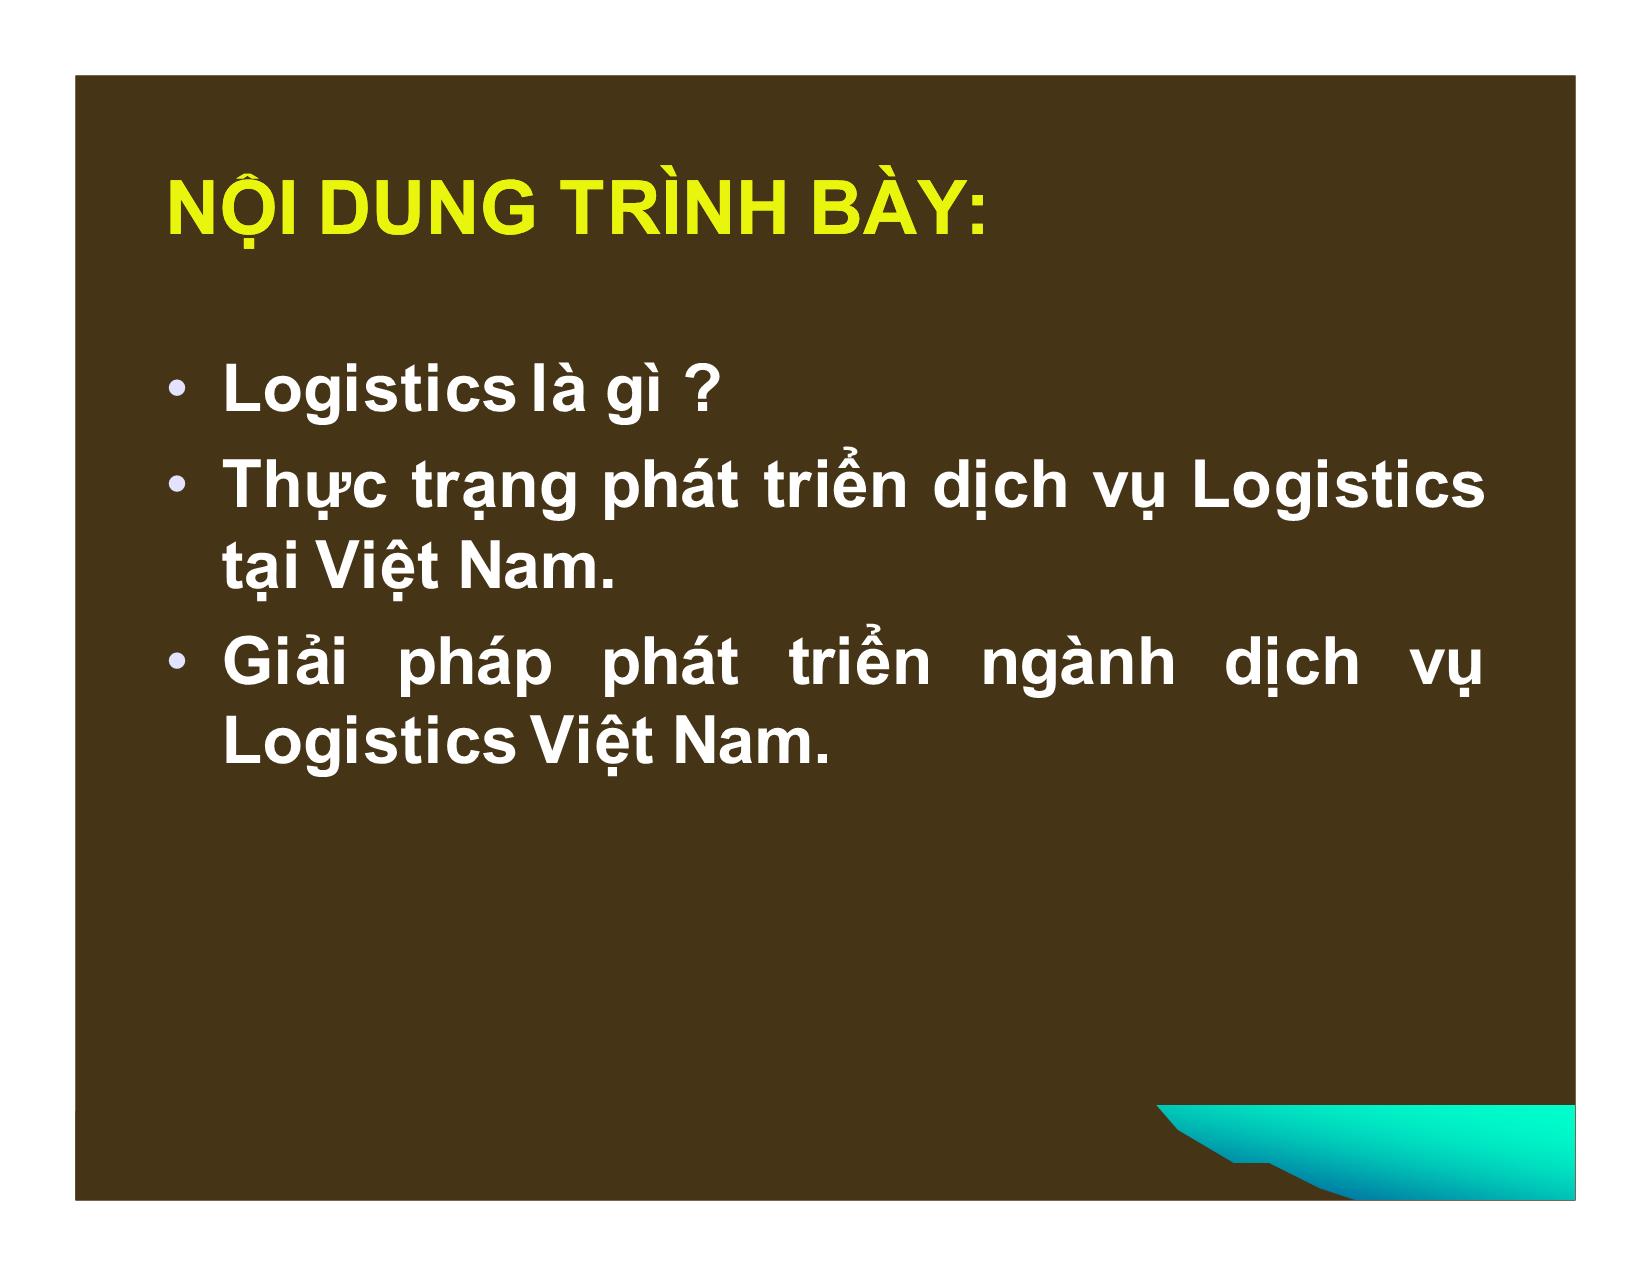 Phát triển dịch vụ logistics ở Việt Nam trong điều kiện hội nhập kinh tế quốc tế trang 2